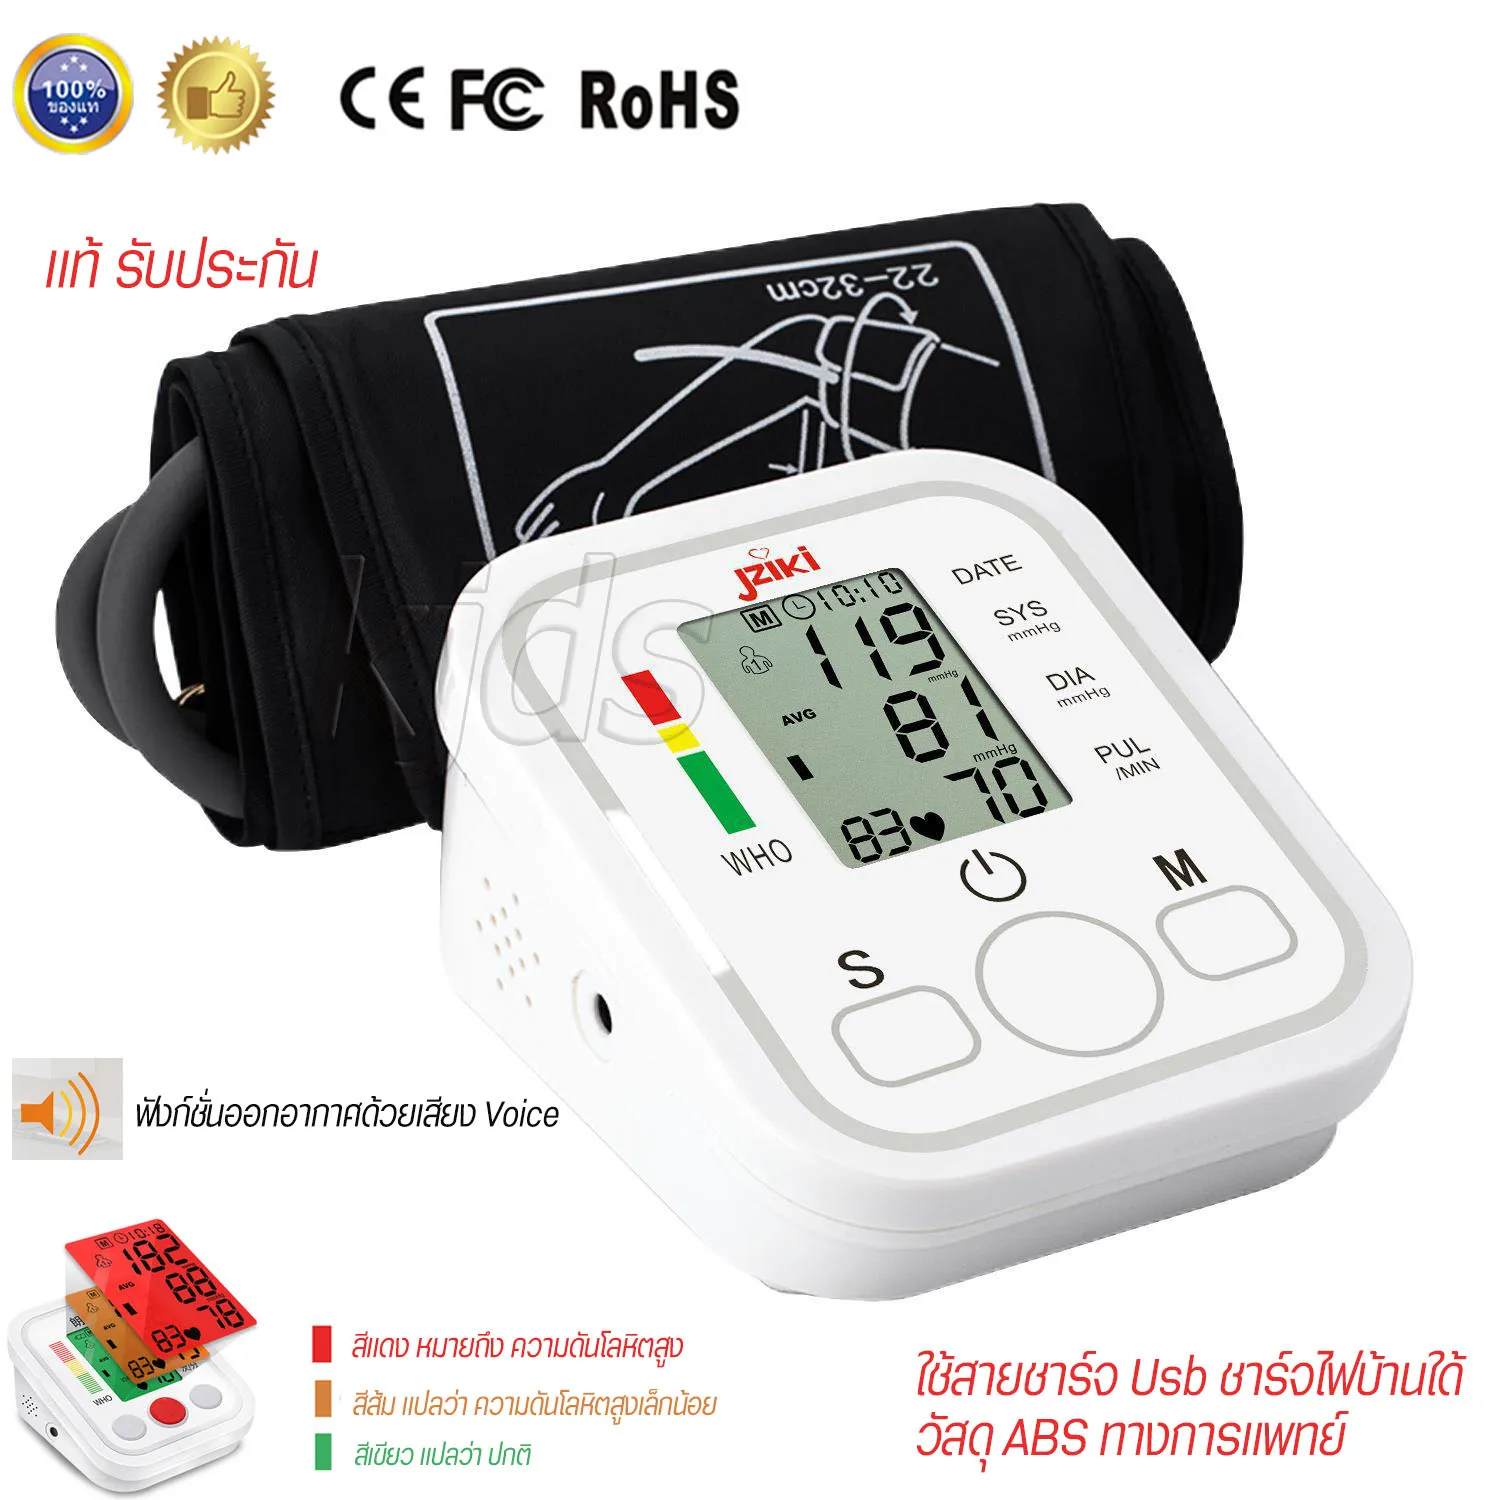 เครื่องวัดความดัน แท้ มีการรับประกัน เครื่องวัดความดัน เครื่องวัดดัน ใช้งานง่าย เครื่องวัดความดันโลหิต  มีเสียงพูด LCD Blood Pressure Monitor